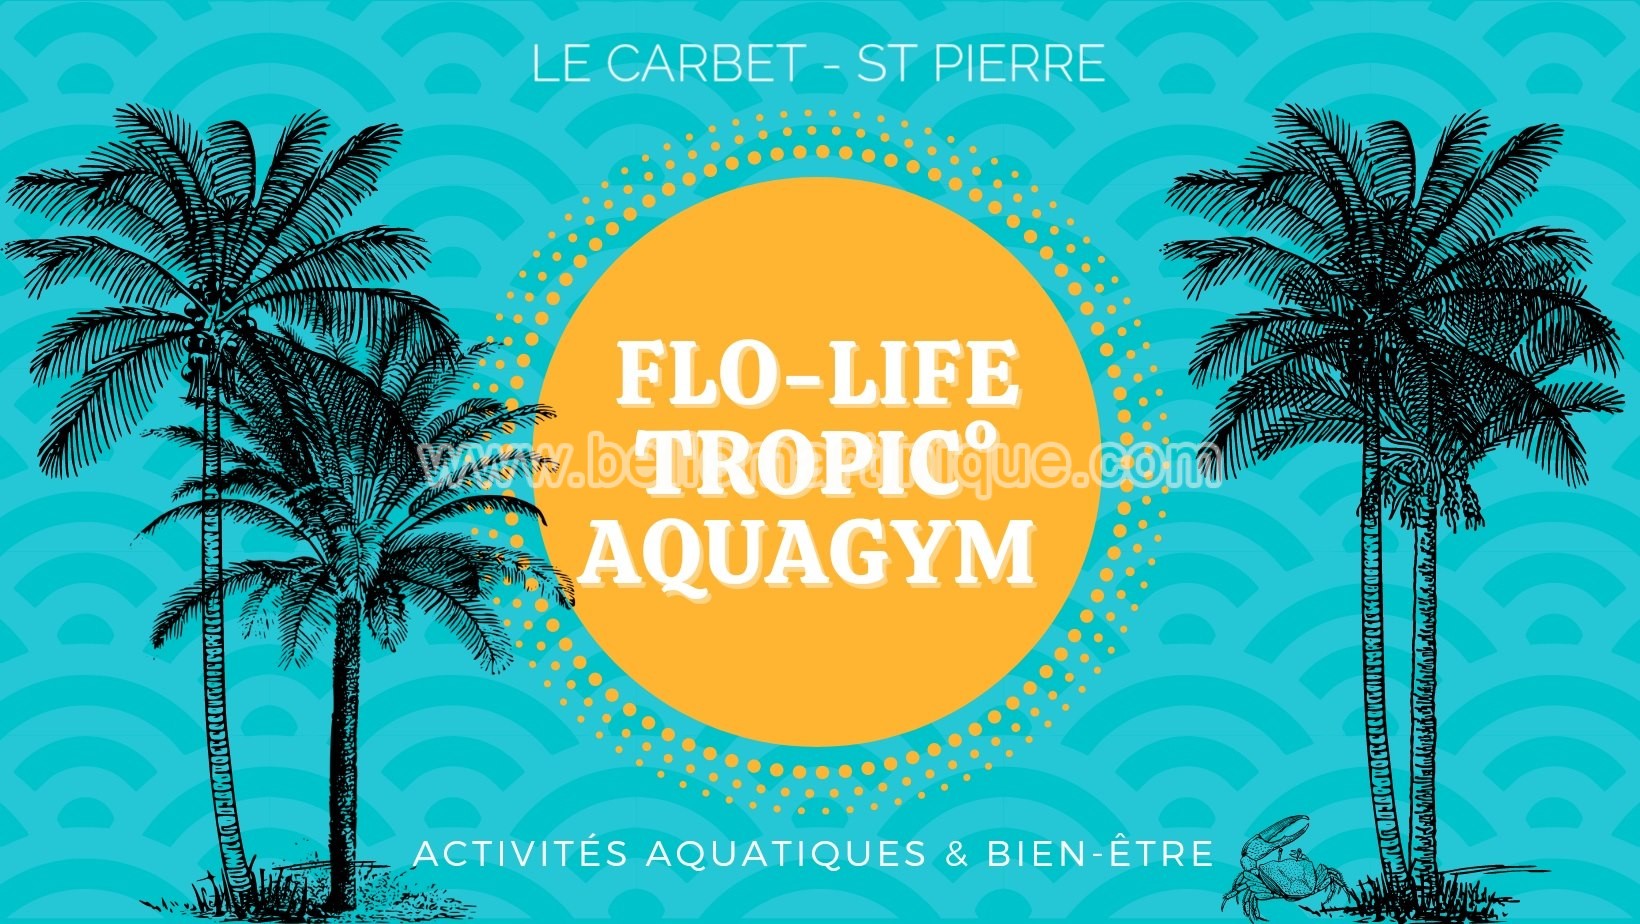 Flo-Life - Tropic - Aquagym - le carbet - St Pierre - Martinique - Antilles - Caraibes